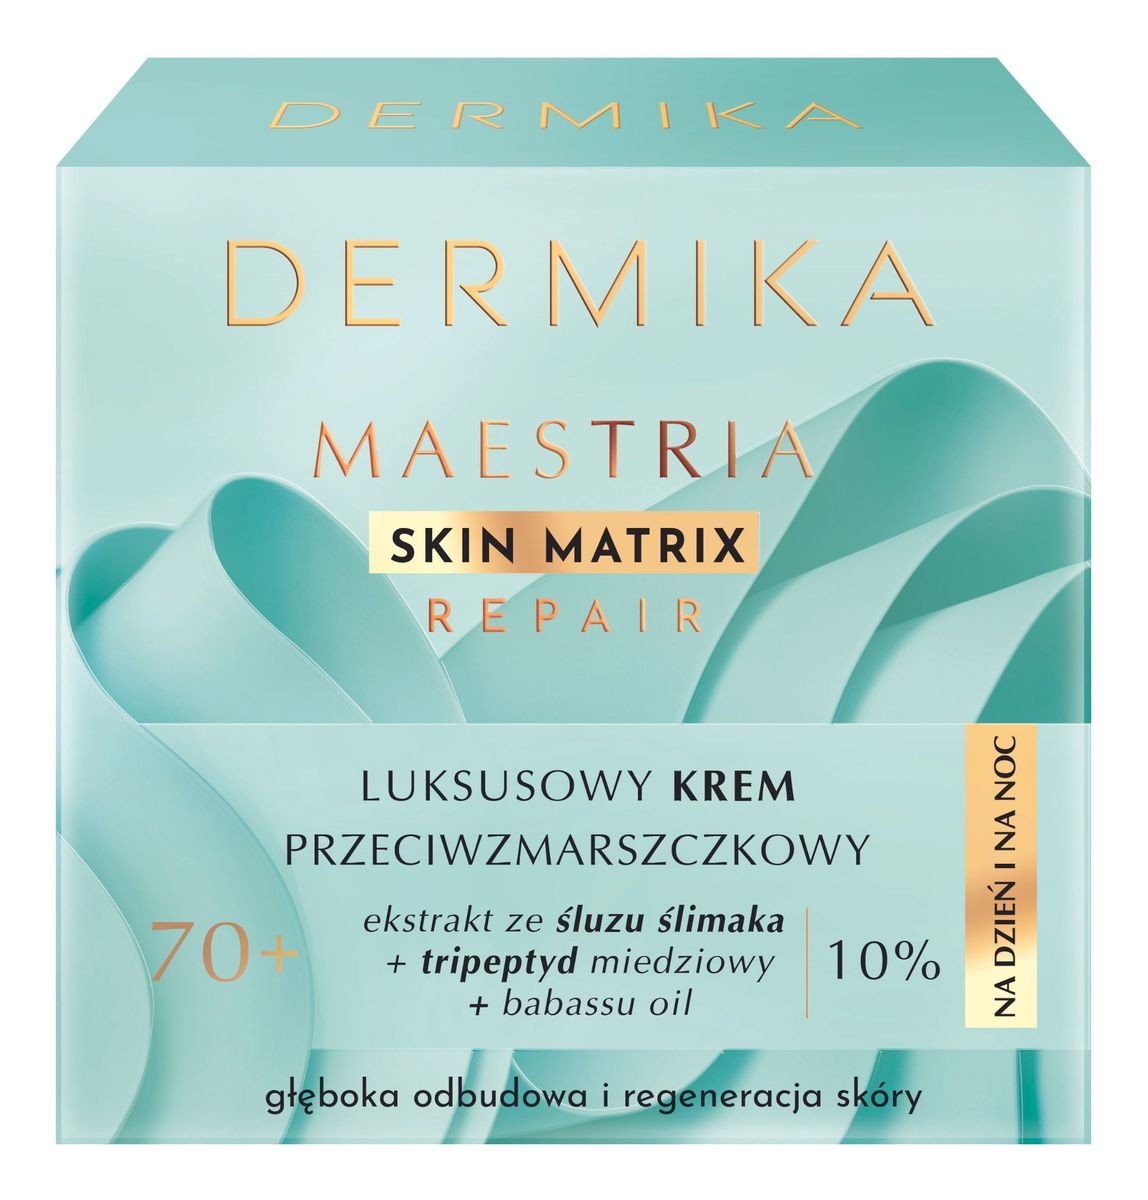 Maestria Skin Matrix Luksusowy krem przeciwzmarszczkowy 70+